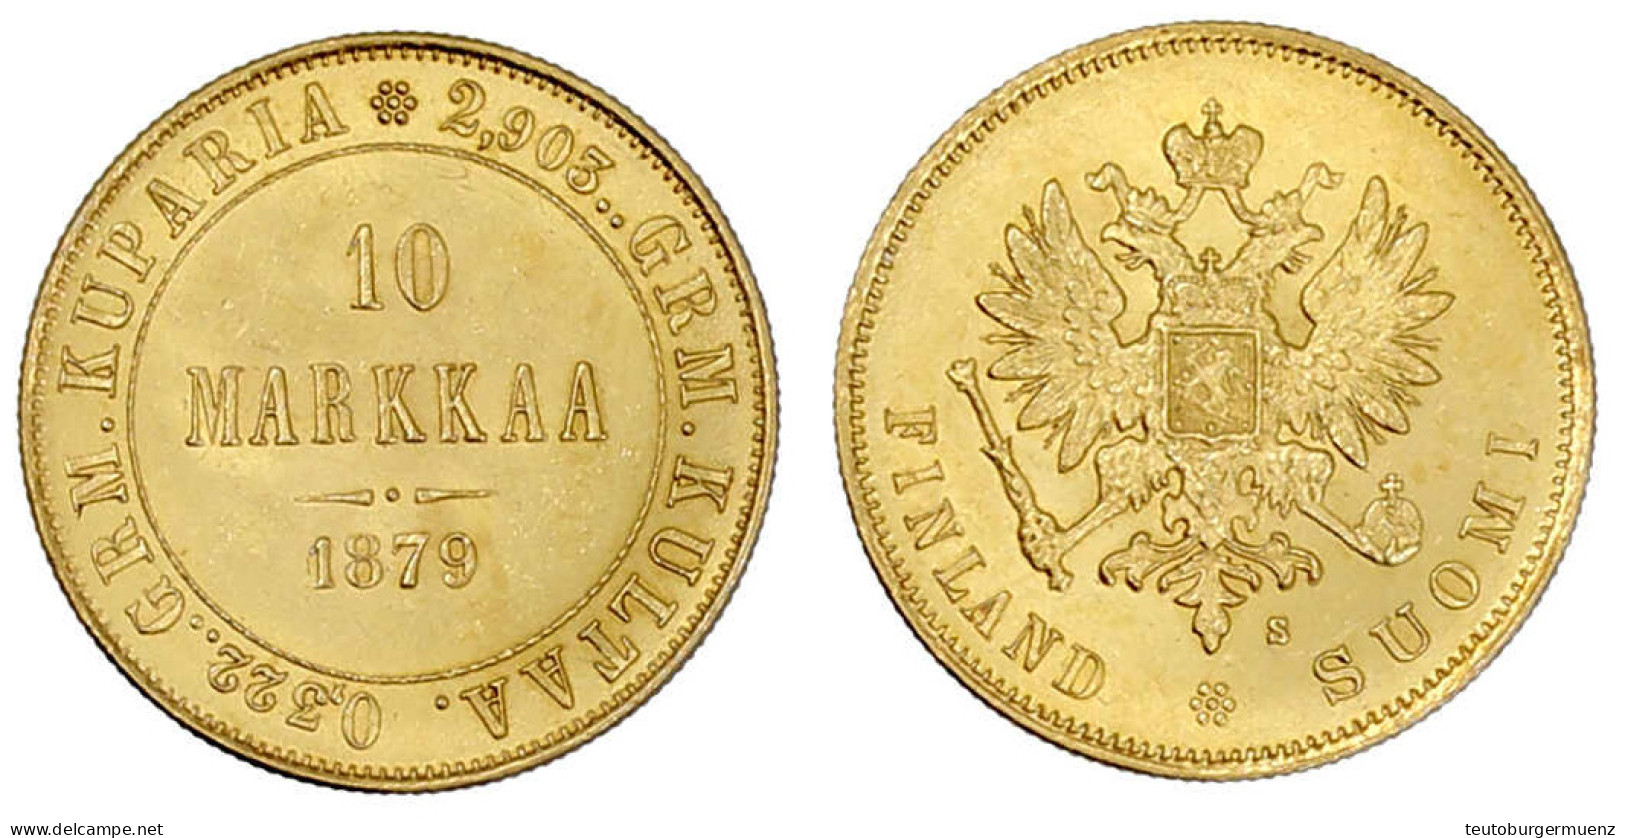 10 Markkaa 1879. 3,23 G. 900/1000. Vorzüglich/Stempelglanz. Bitkin 615. Krause/Mishler 8.1. - Finnland